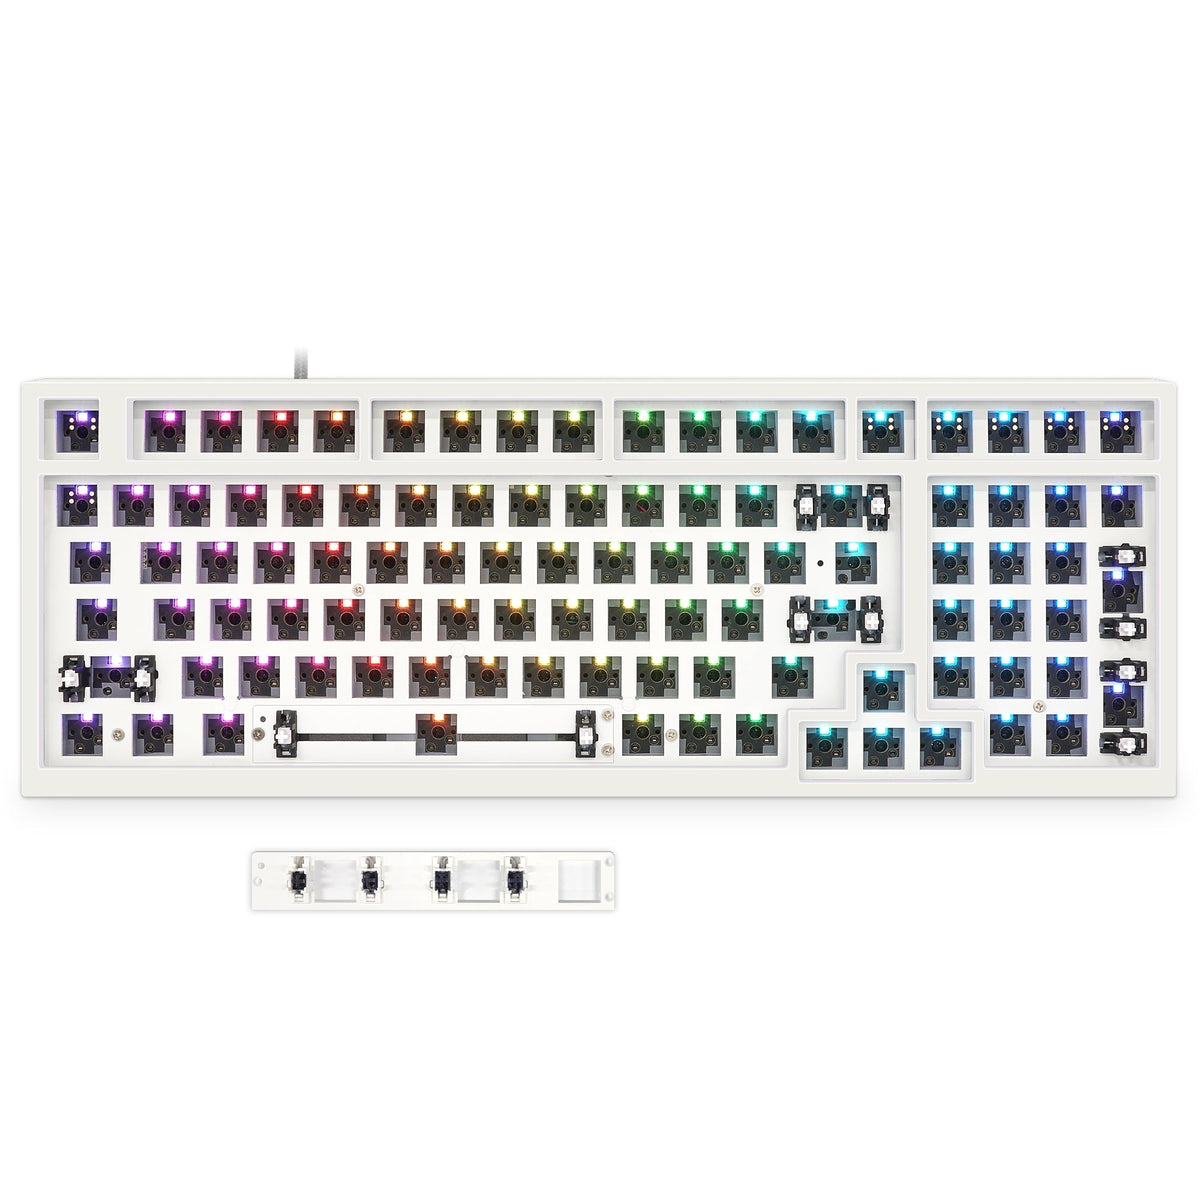 YUNZII GK980 Lite-Gasket Keyboard Kit with ABS Keyboard Case